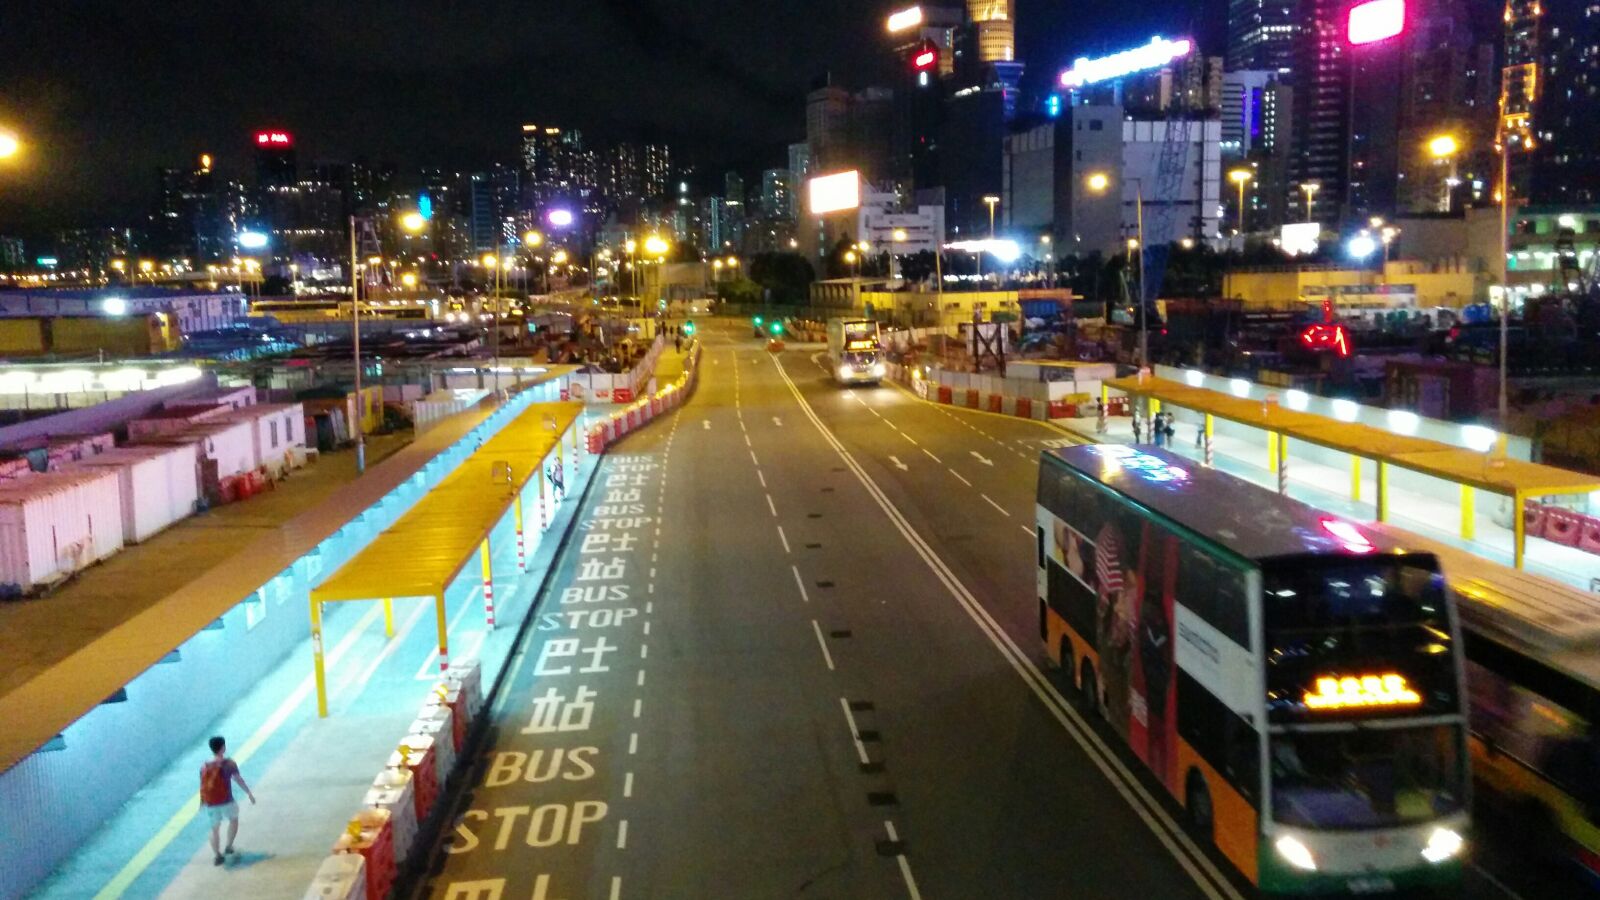 LG Nexus 5 sample photo. Hongkong, road, night photography